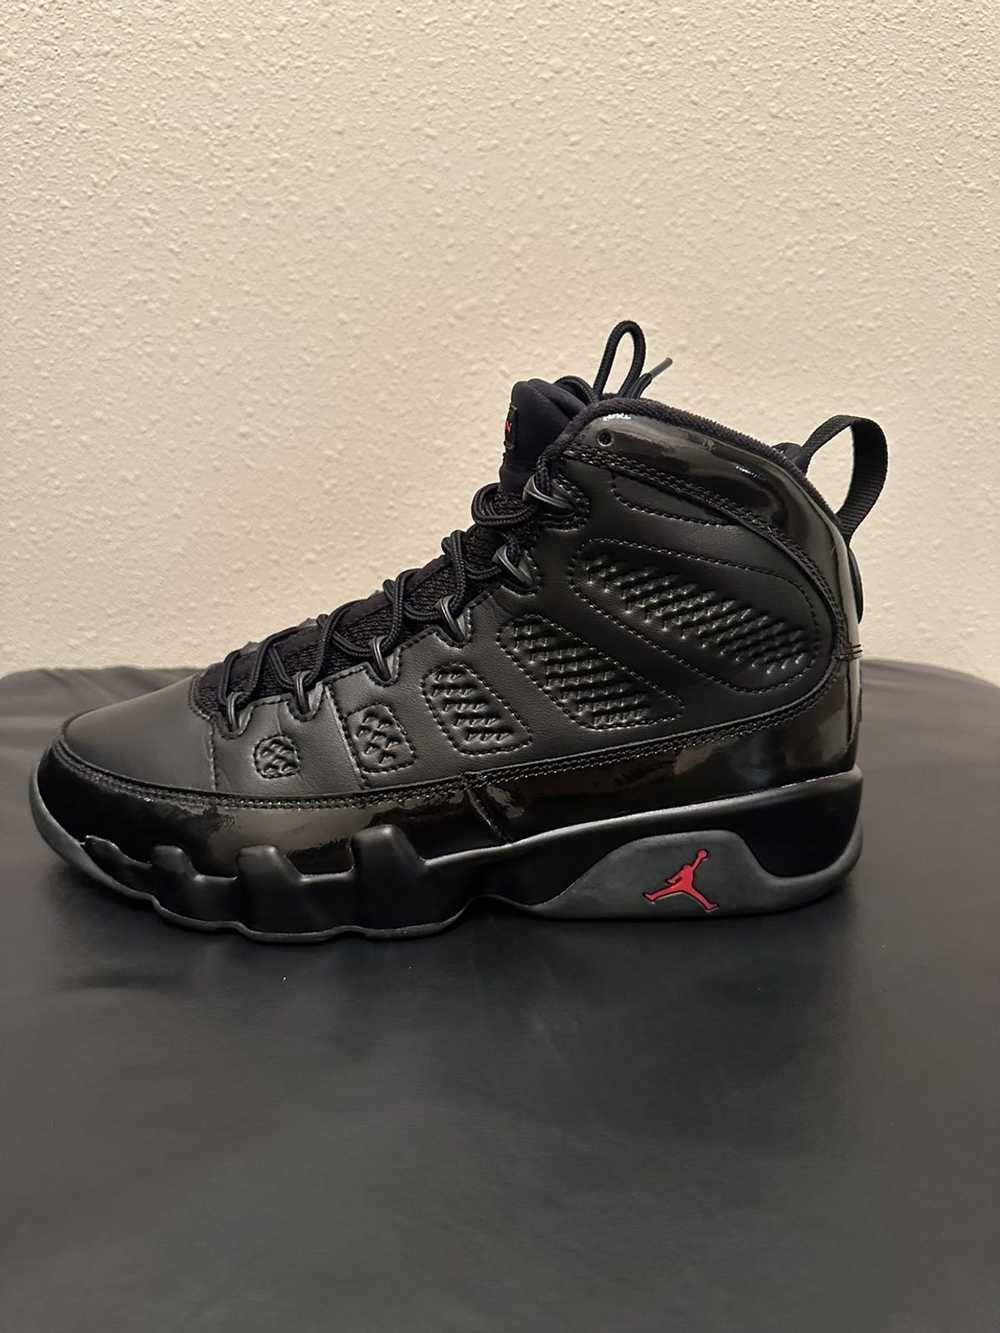 Jordan Brand × Nike Jordan 9 Retro Bred Patent - image 2